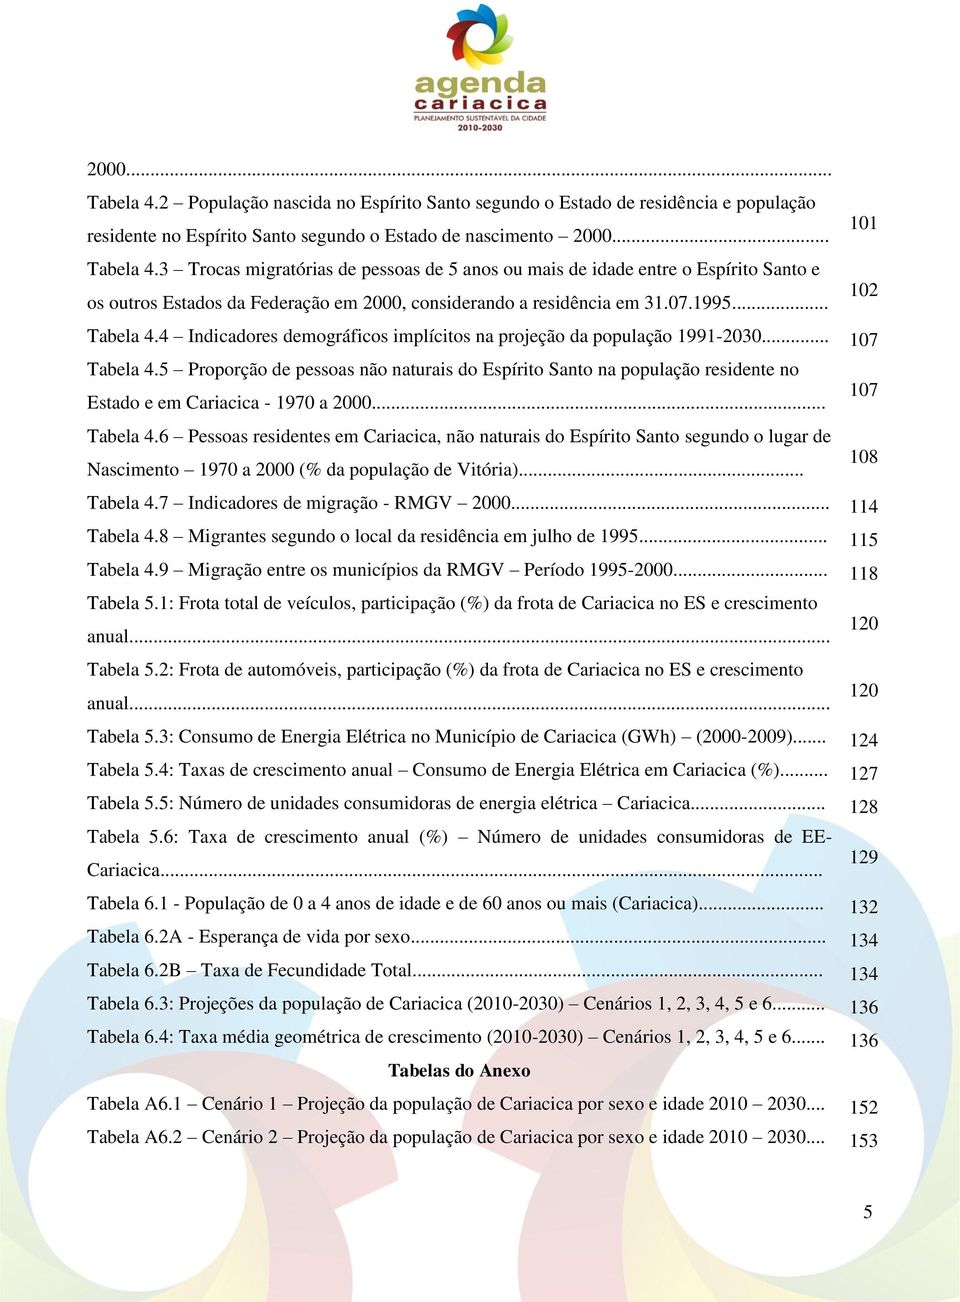 5 Proporção de pessoas não naturais do Espírito Santo na população residente no Estado e em Cariacica - 1970 a 2000... Tabela 4.